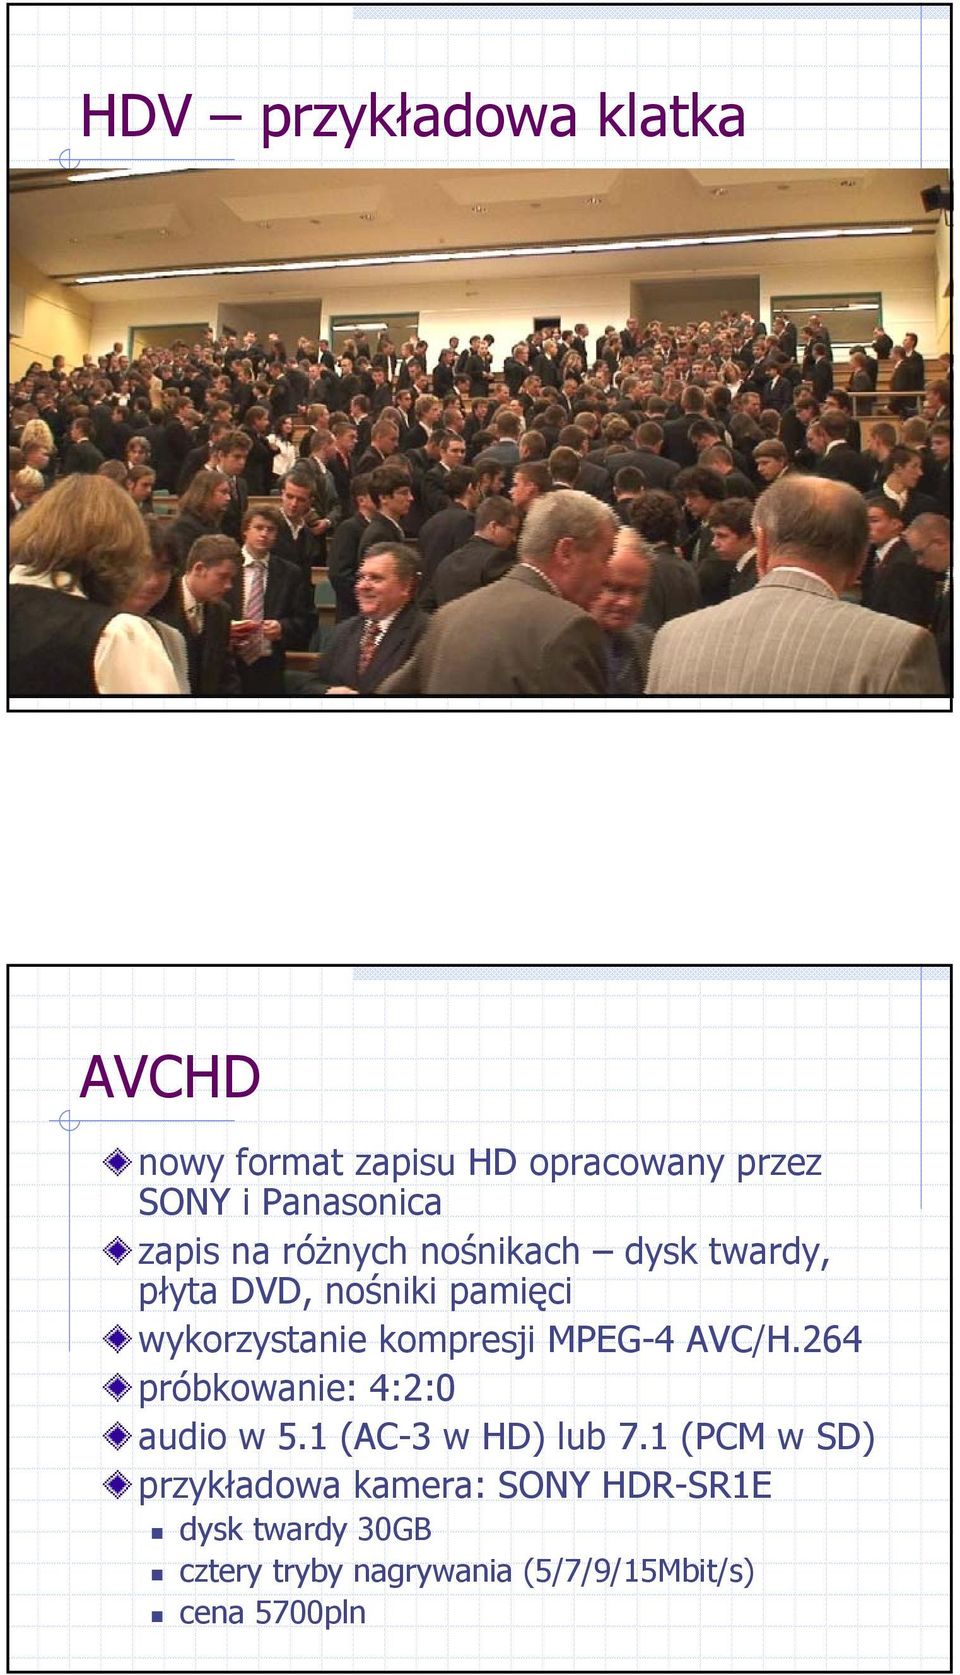 kompresji MPEG-4 AVC/H.264 próbkowanie: 4:2:0 audio w 5.1 (AC-3 w HD) lub 7.